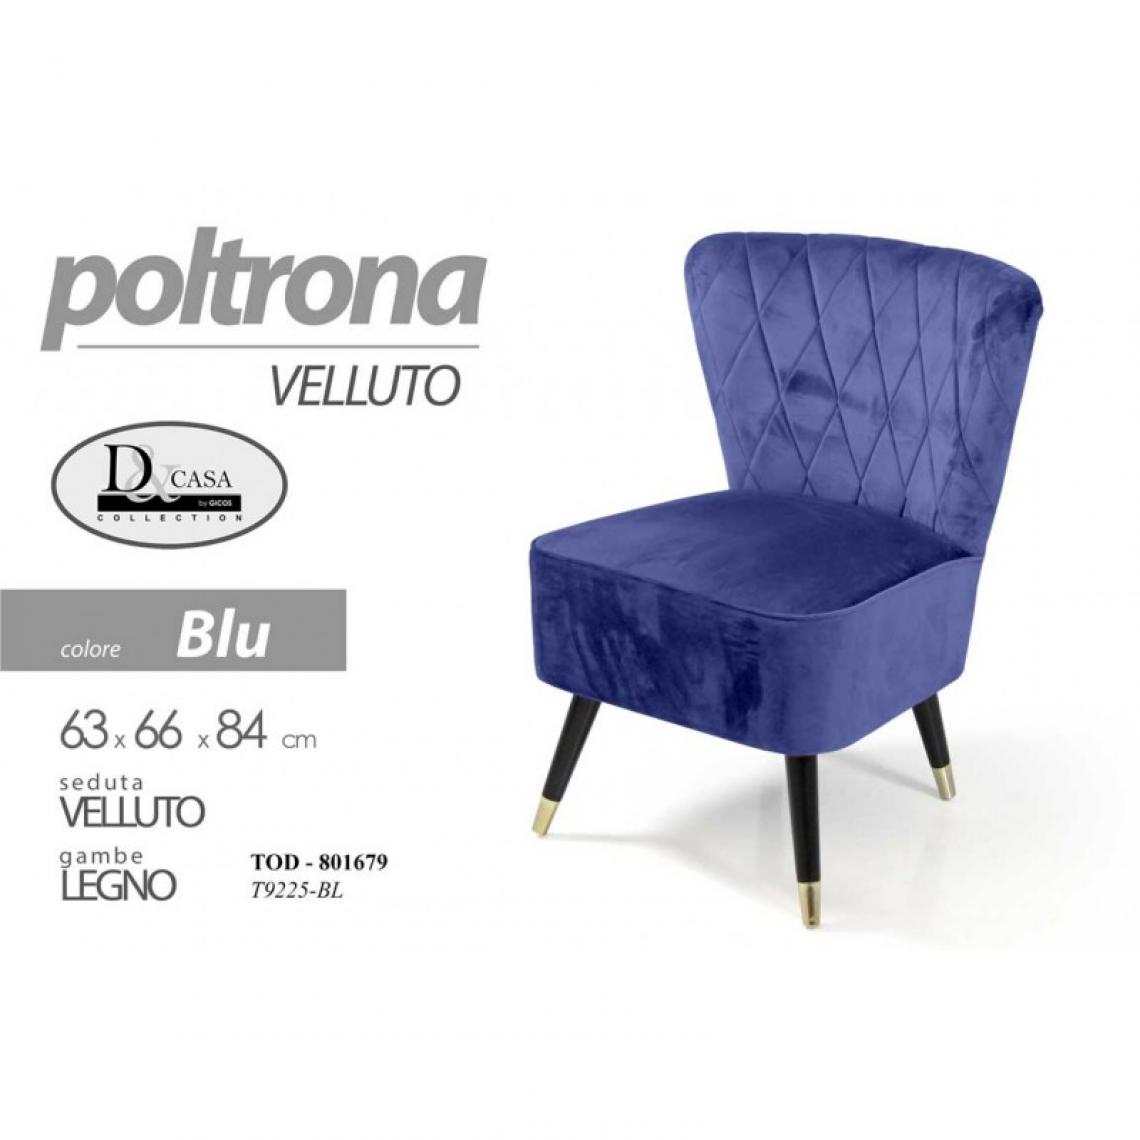 Webmarketpoint - Fauteuil en velours bleu avec pieds en bois cm 63 x 66 x 84 h - Chaises